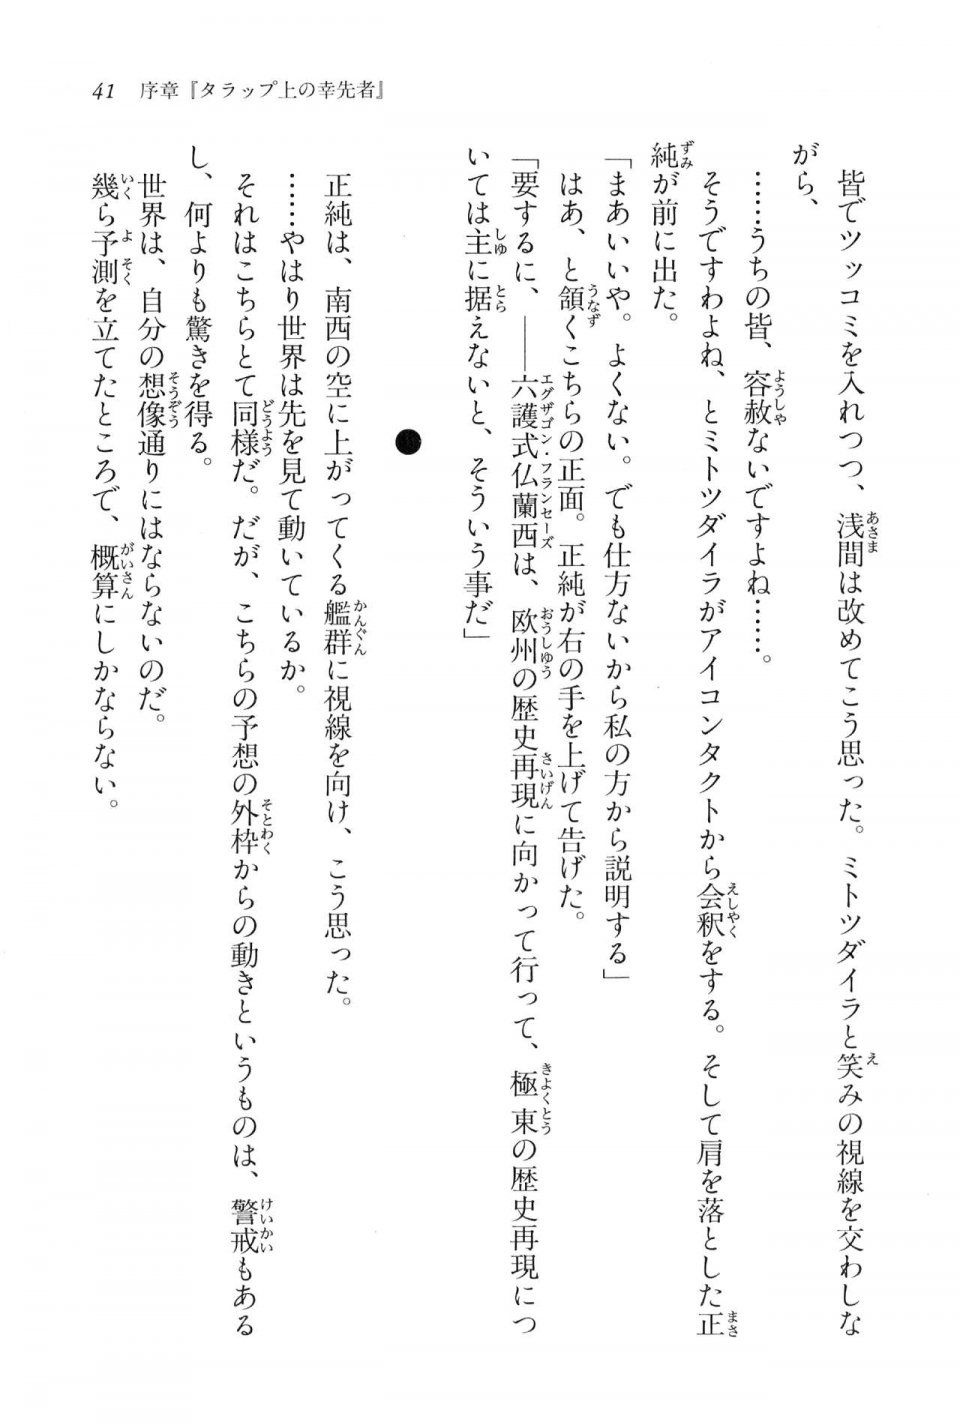 Kyoukai Senjou no Horizon LN Vol 16(7A) - Photo #41